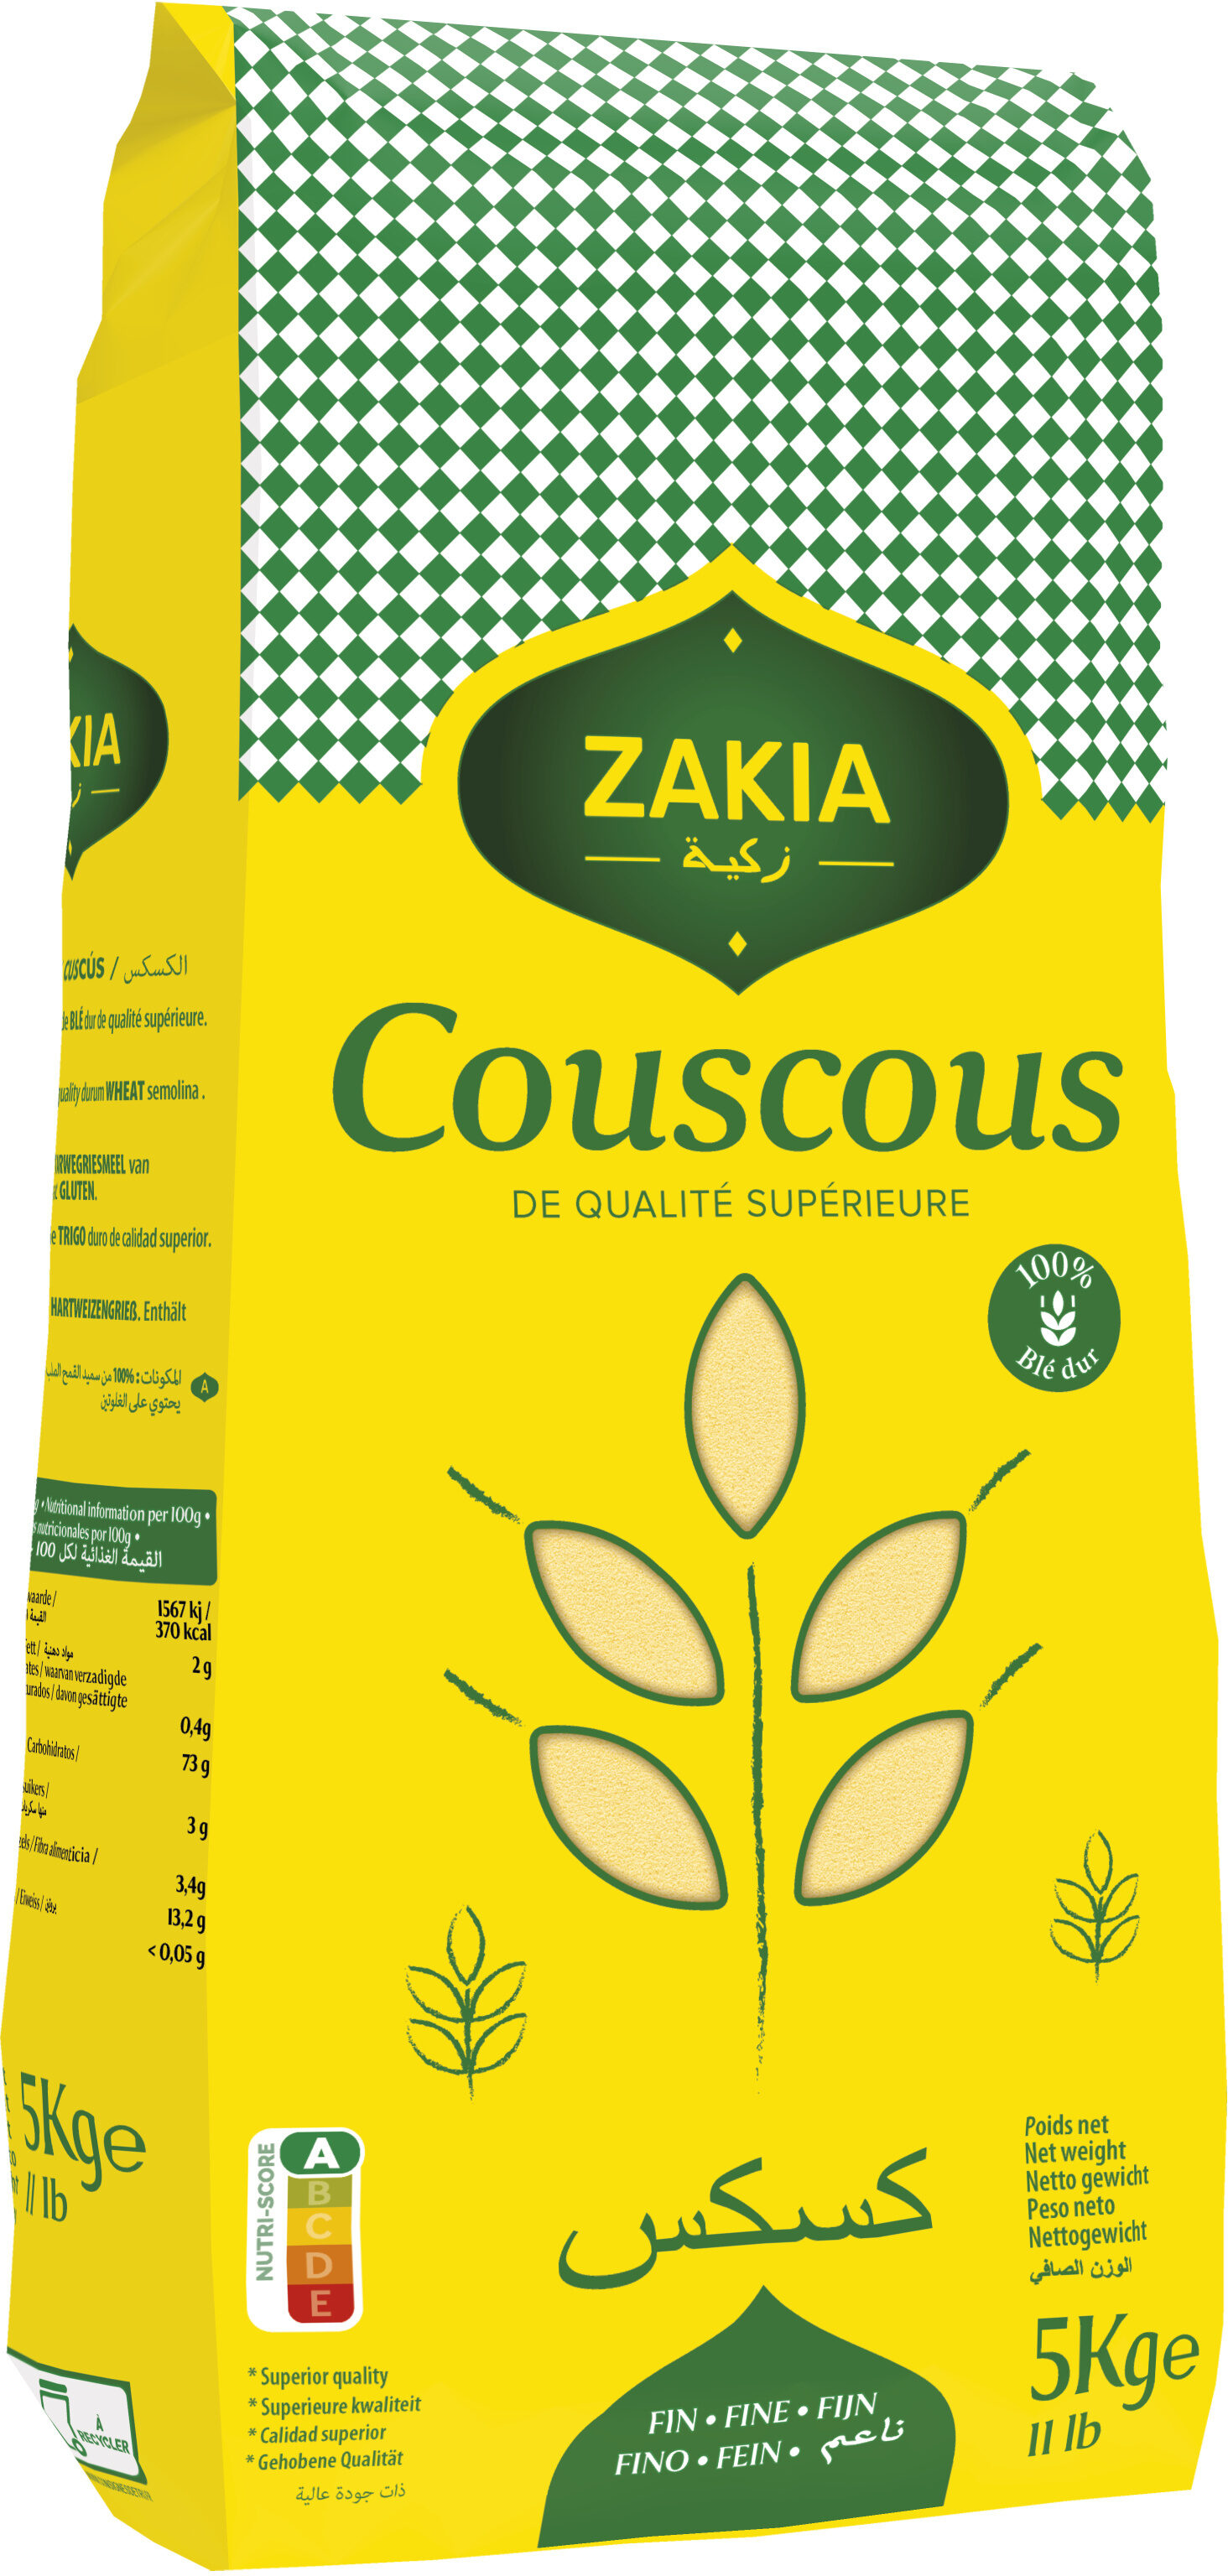 Zakia couscous fin 5kg - Product - fr